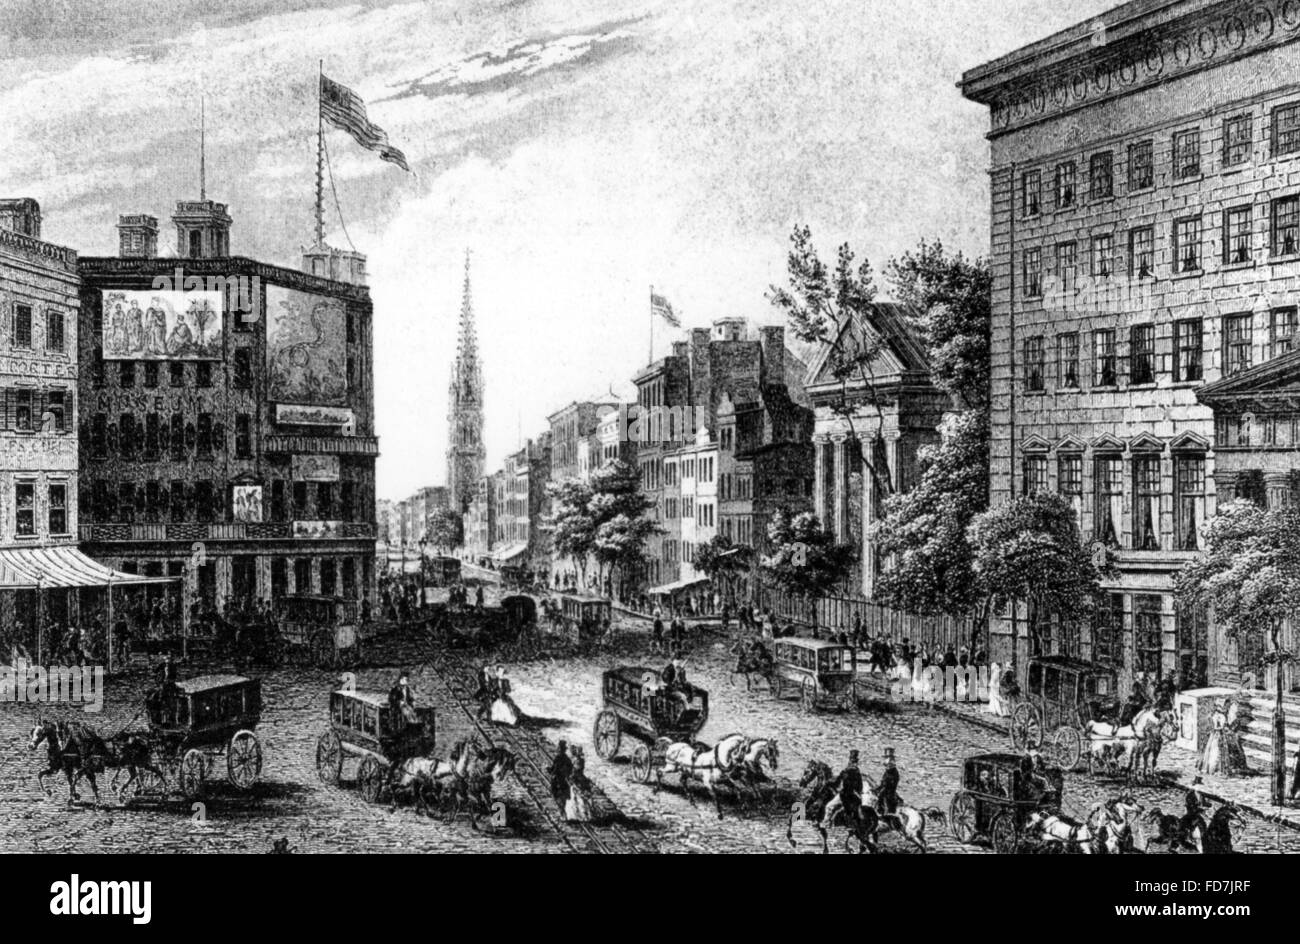 New York City around 1850